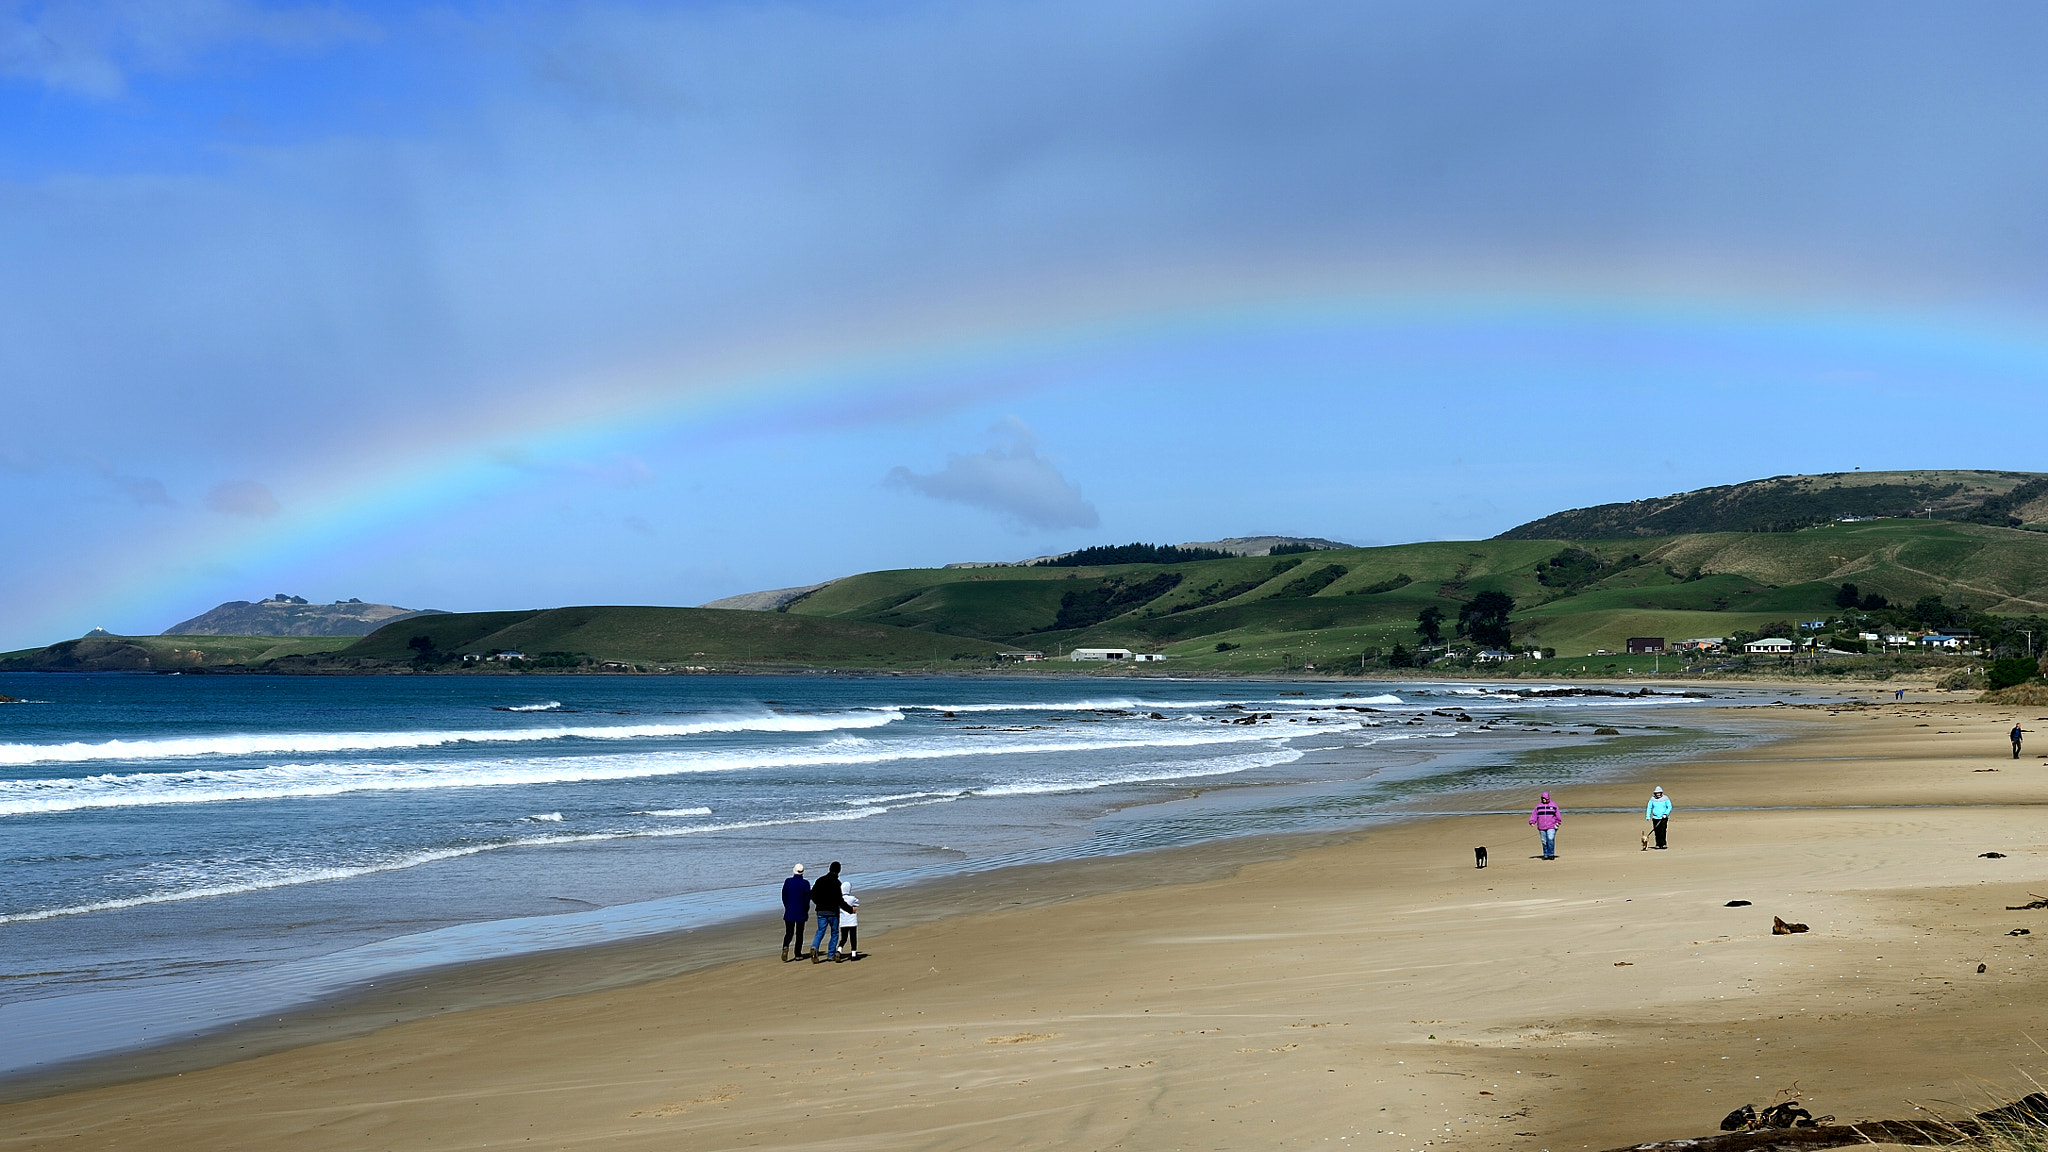 Nikon Df sample photo. A rainbow over a beach near kaka point photography